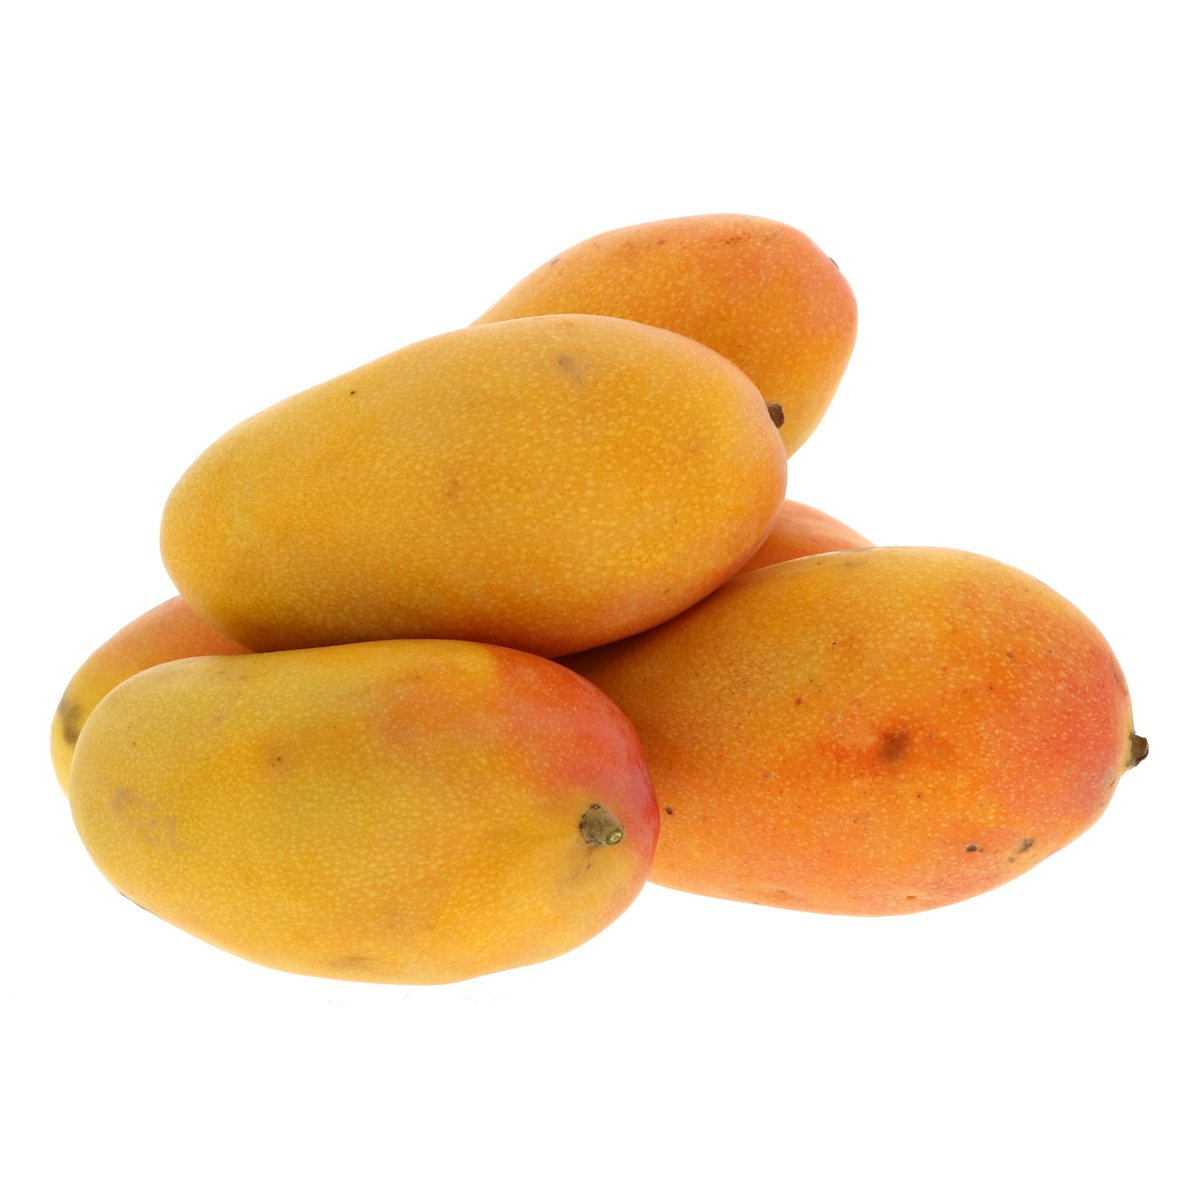 Buy Mango Taimoor Yemen 1 kg Online at Best Price | Mangoes | Lulu KSA in Saudi Arabia